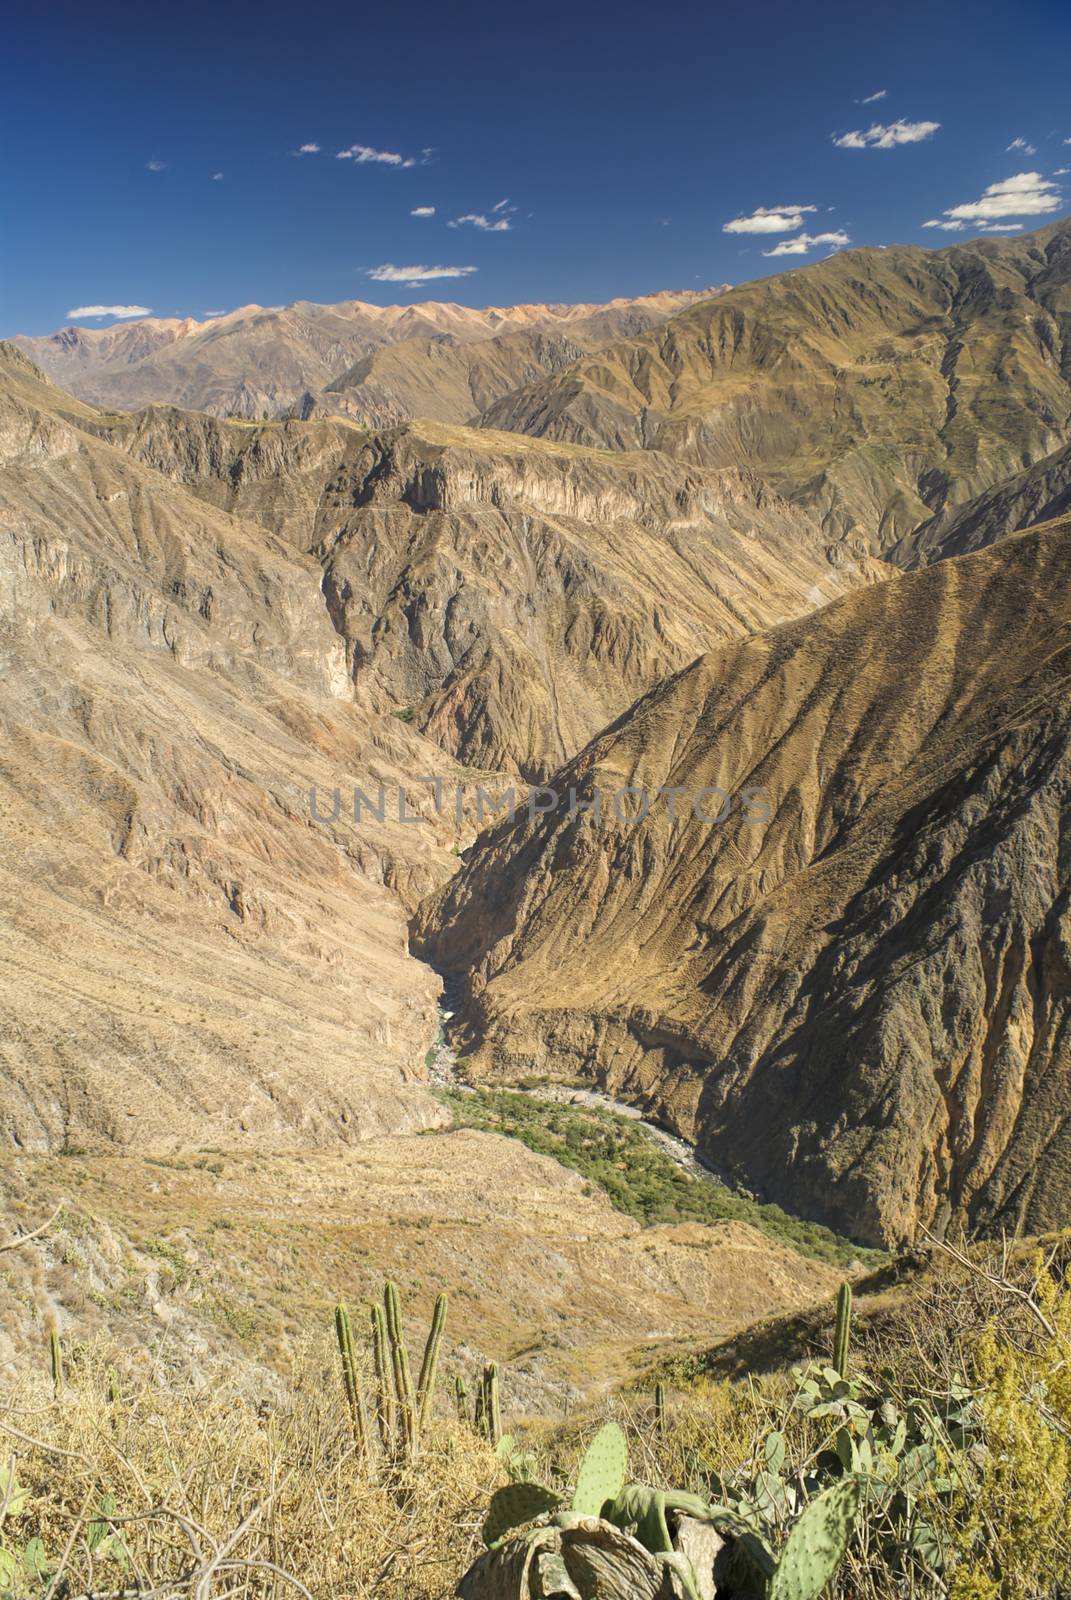 Picturesque view arid landscape around Canon del Colca, famous tourist destination in Peru